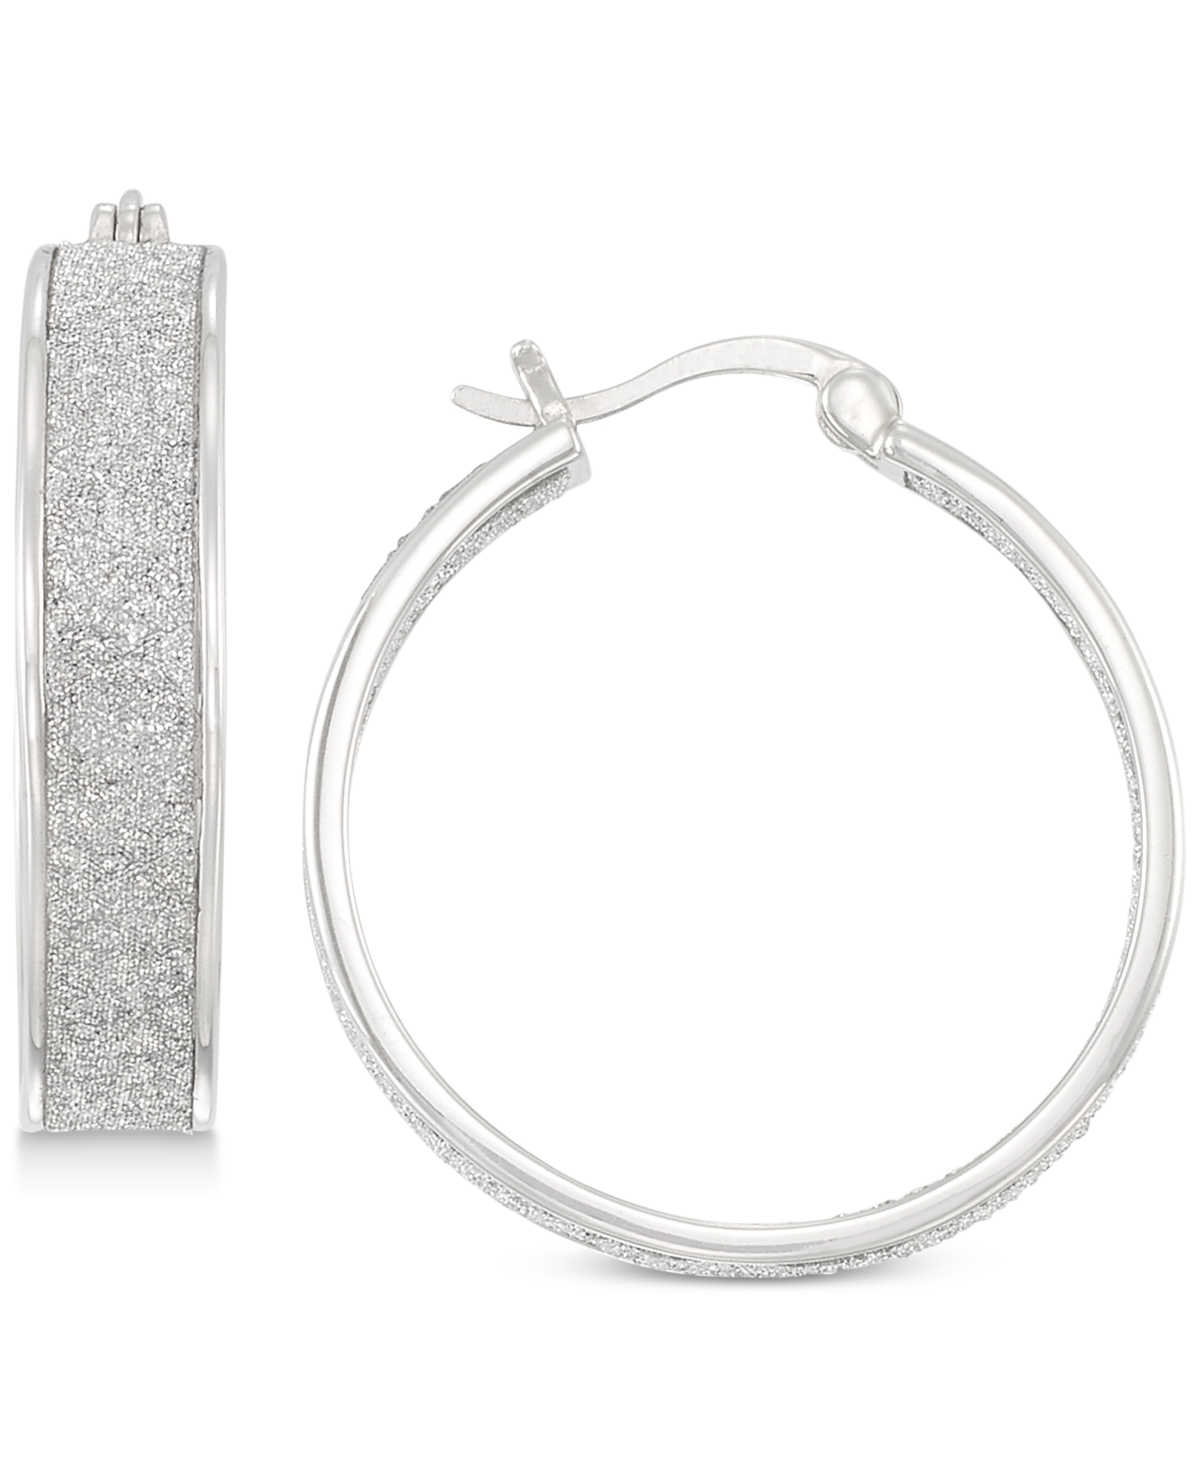 Glitter Hoop Earrings in Sterling Silver - Silver